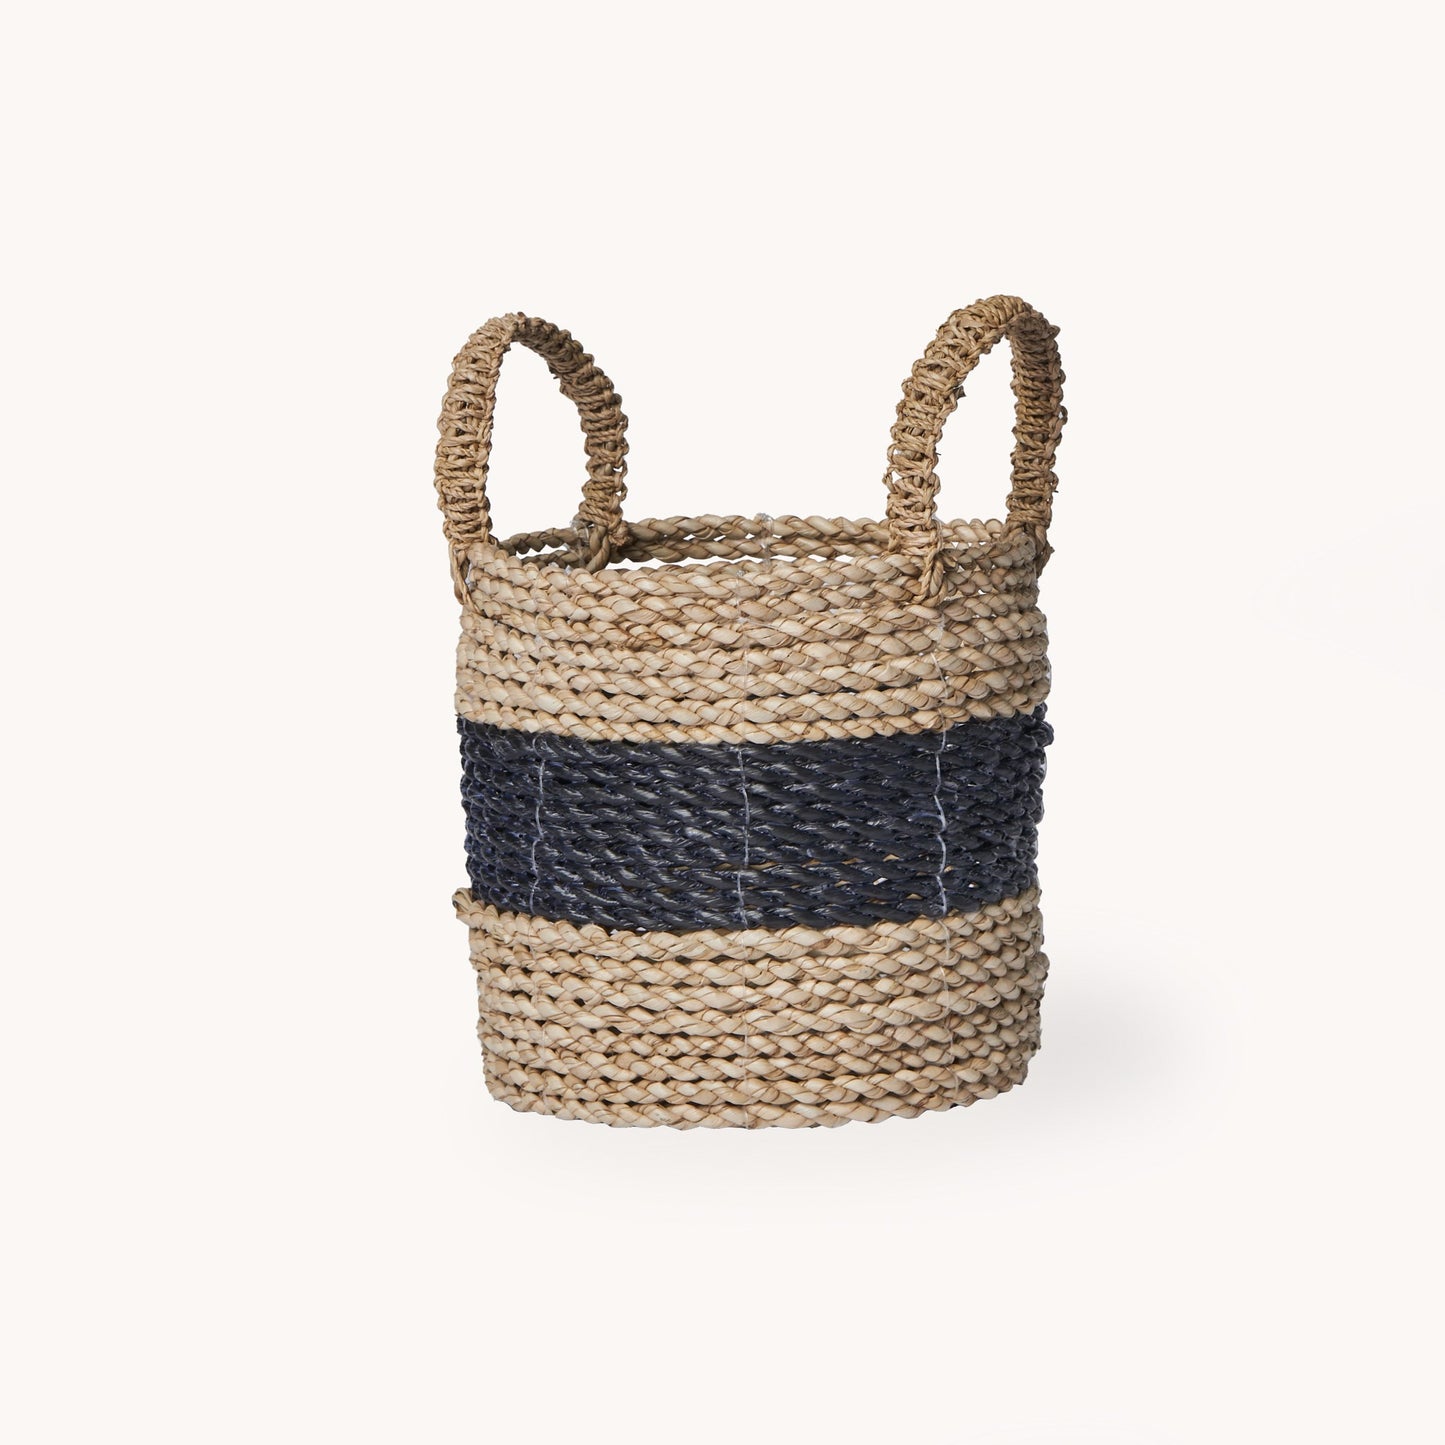 Set of 3 Handled Baskets - Black/Natural